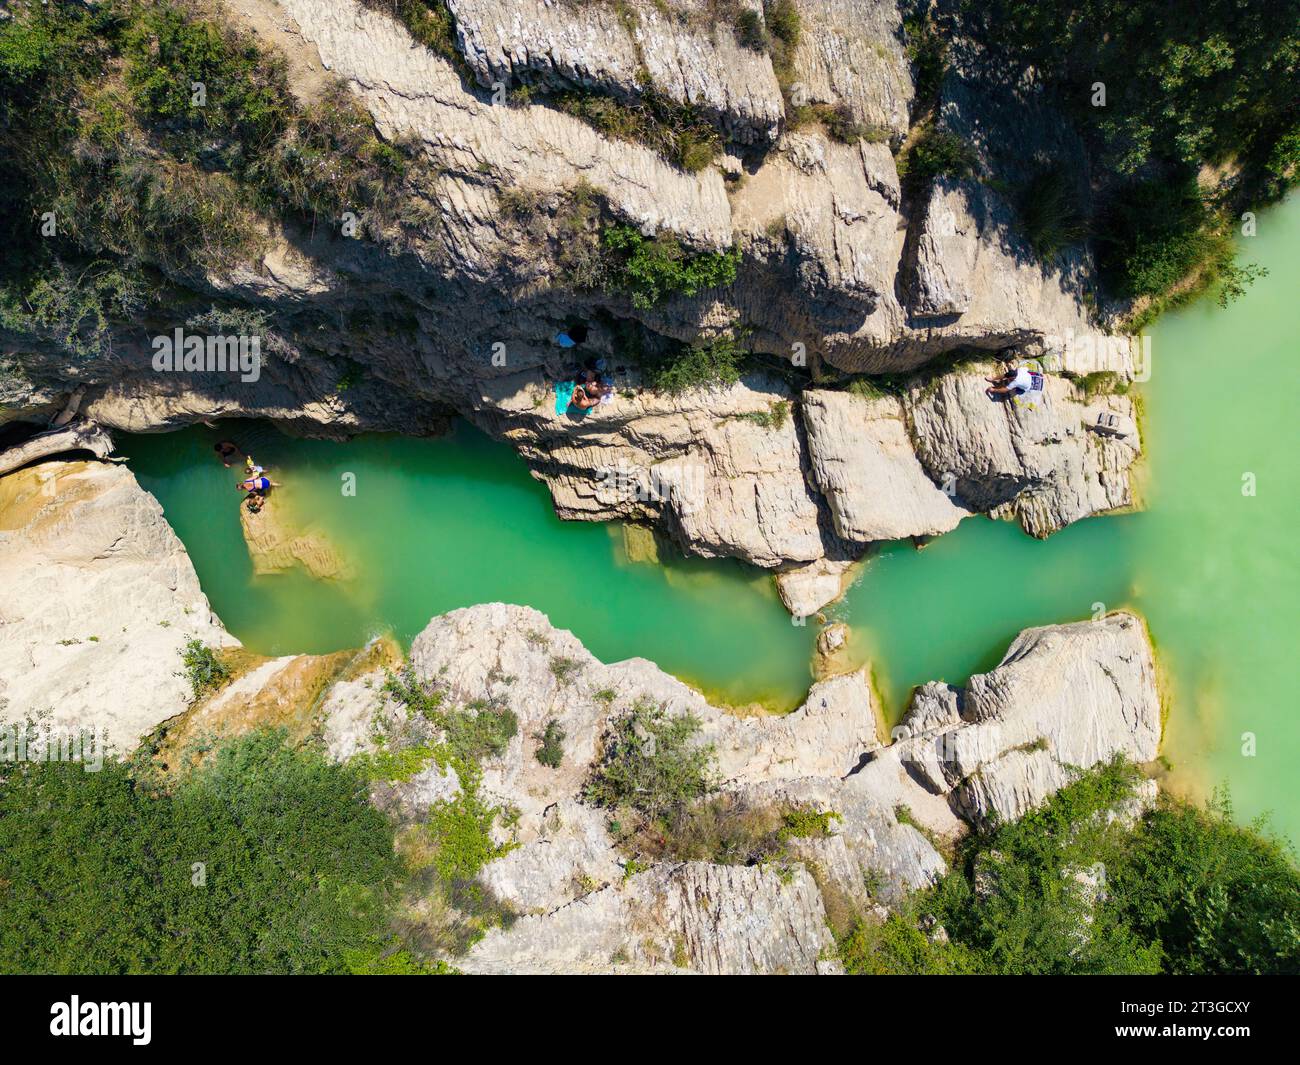 France, Alpes de haute Provence, Parc naturel régional du Luberon, Lurs, cascade de Lurs (vue aérienne) (vue aérienne) Banque D'Images